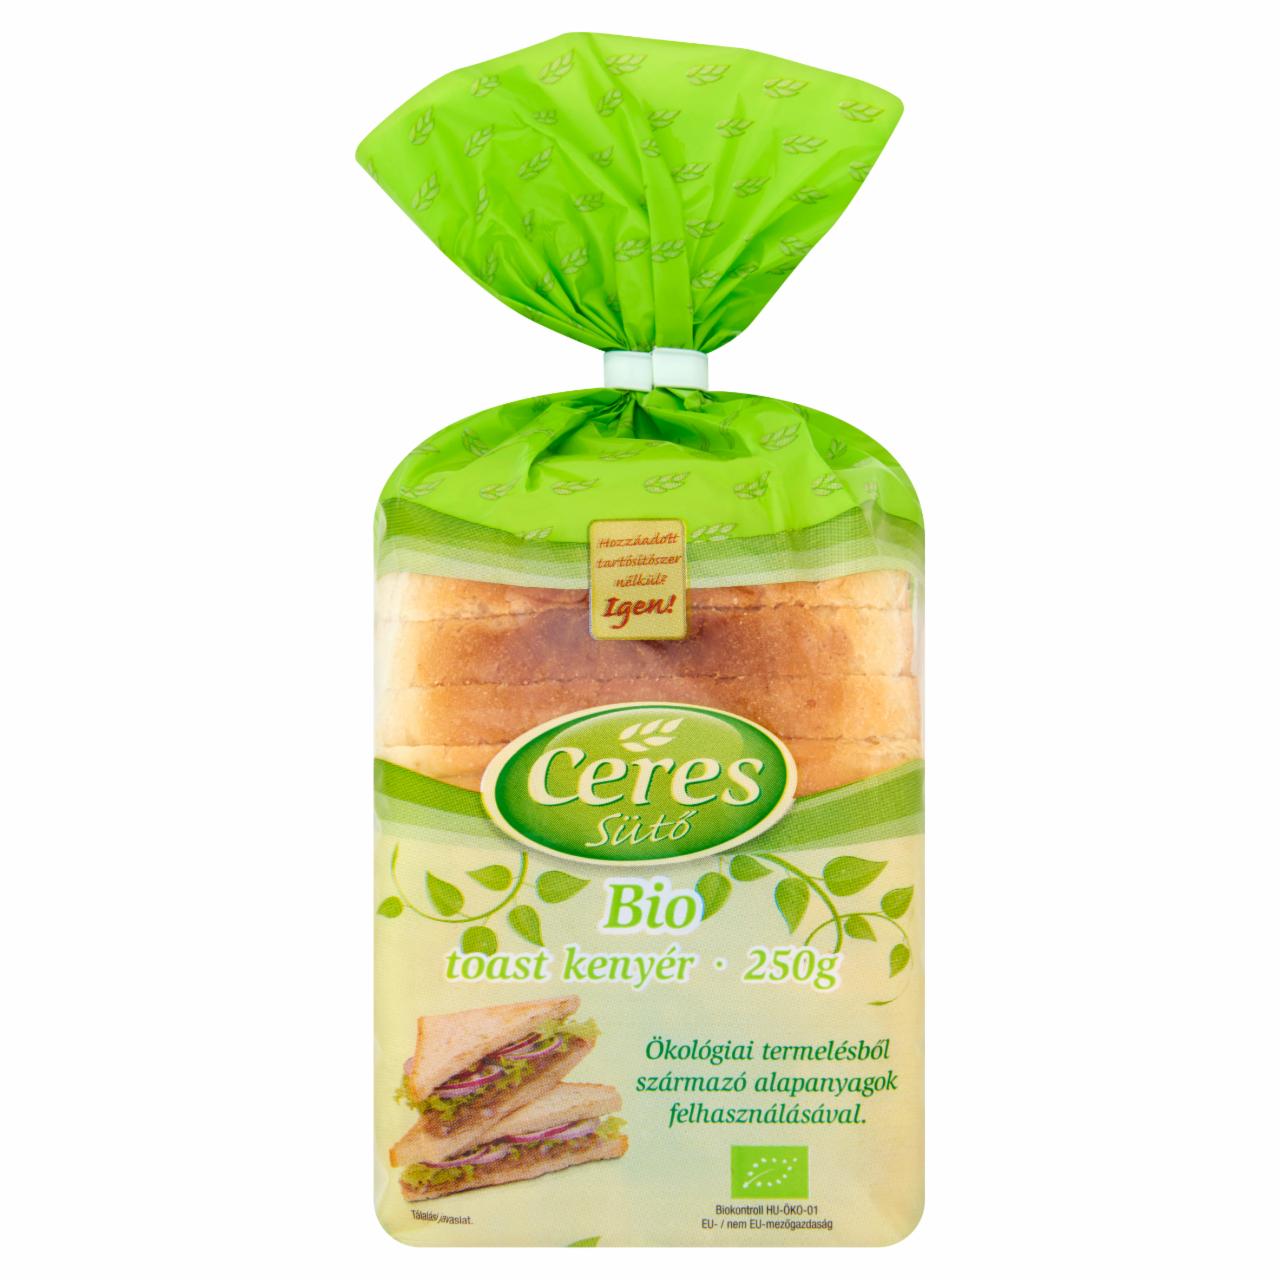 Képek - Ceres Sütő BIO toast kenyér 250 g